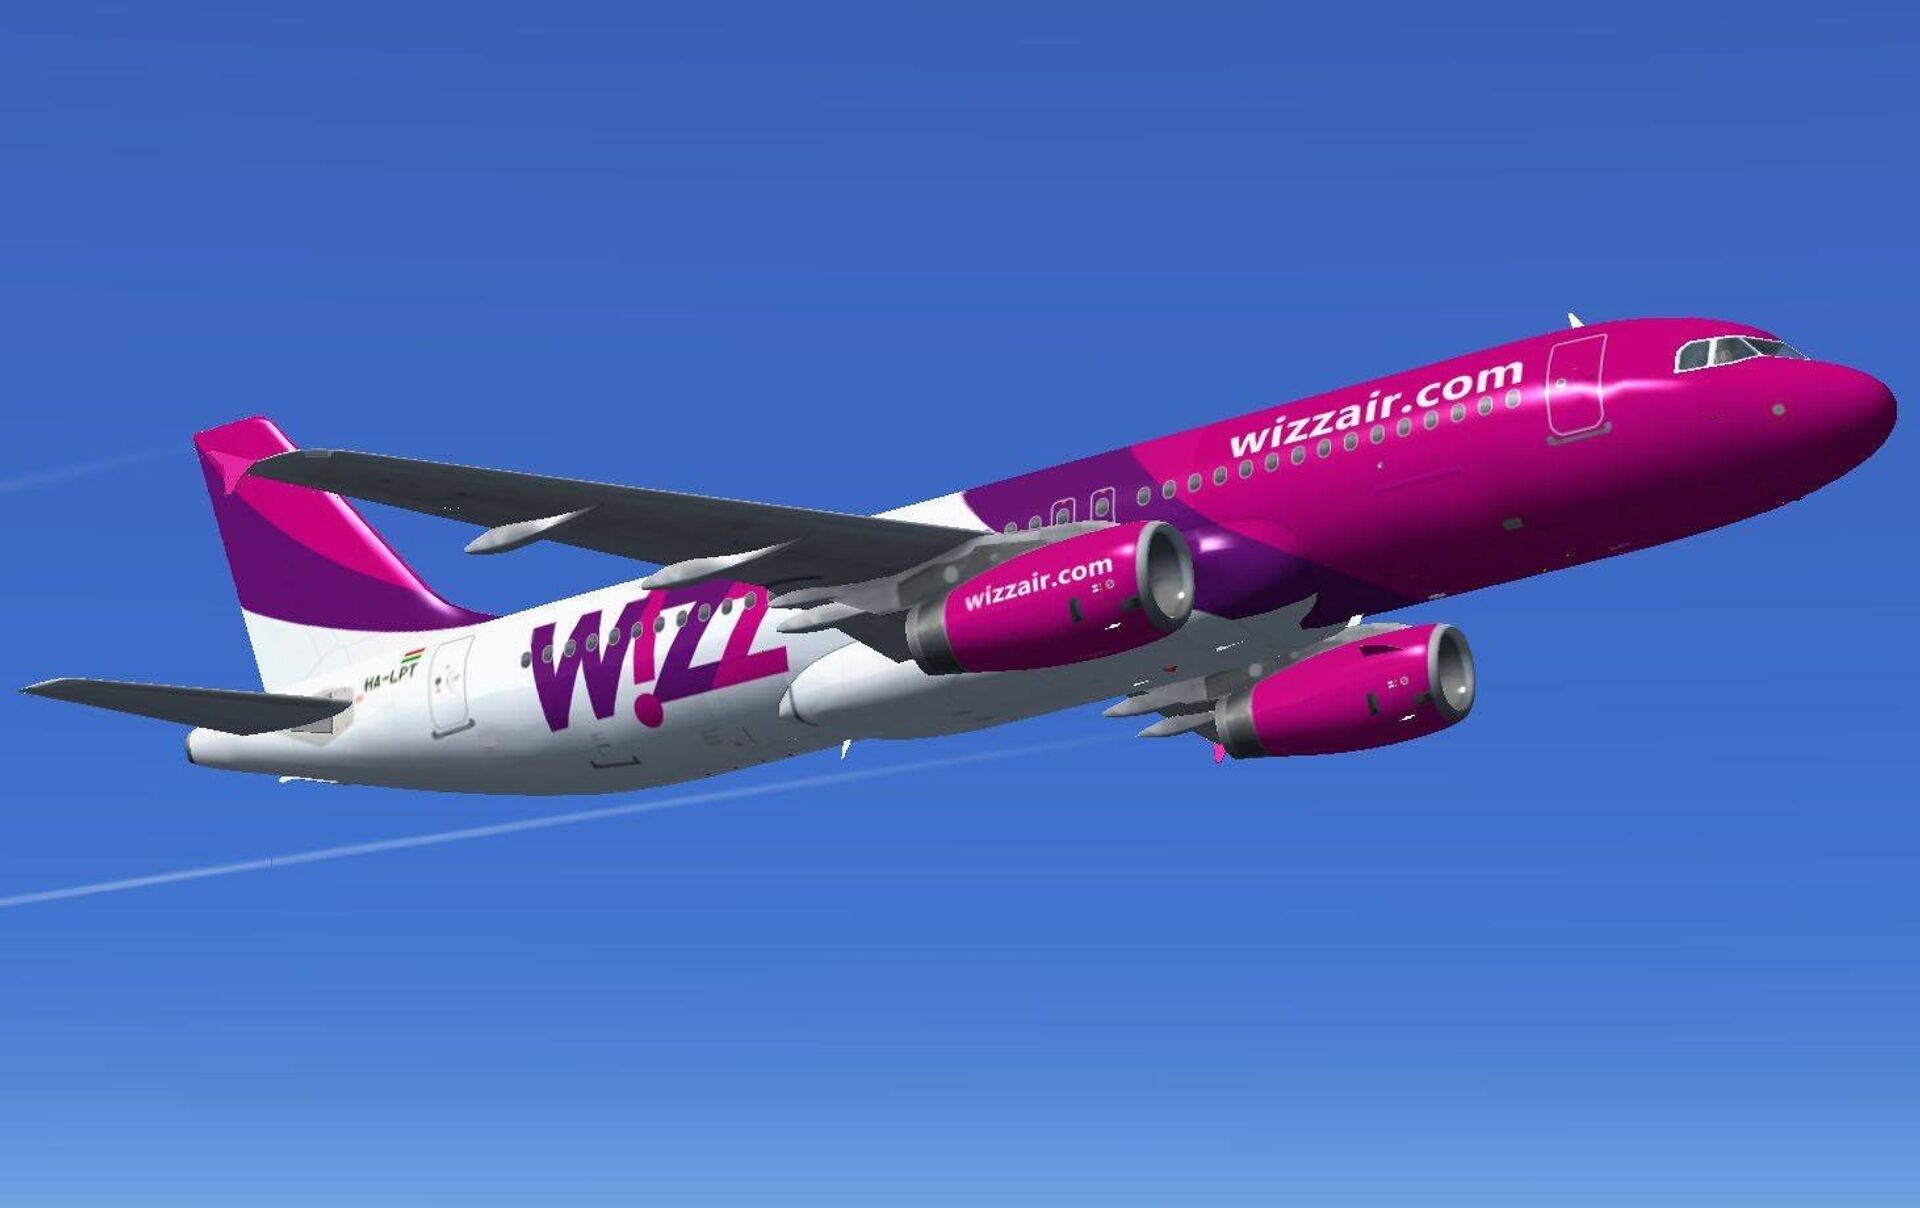 W iz. Wizz Air a319. Венгерская авиакомпания Wizzair. Венгерские авиалинии Wizzair самолеты. Wizz Air Abu Dhabi самолеты.